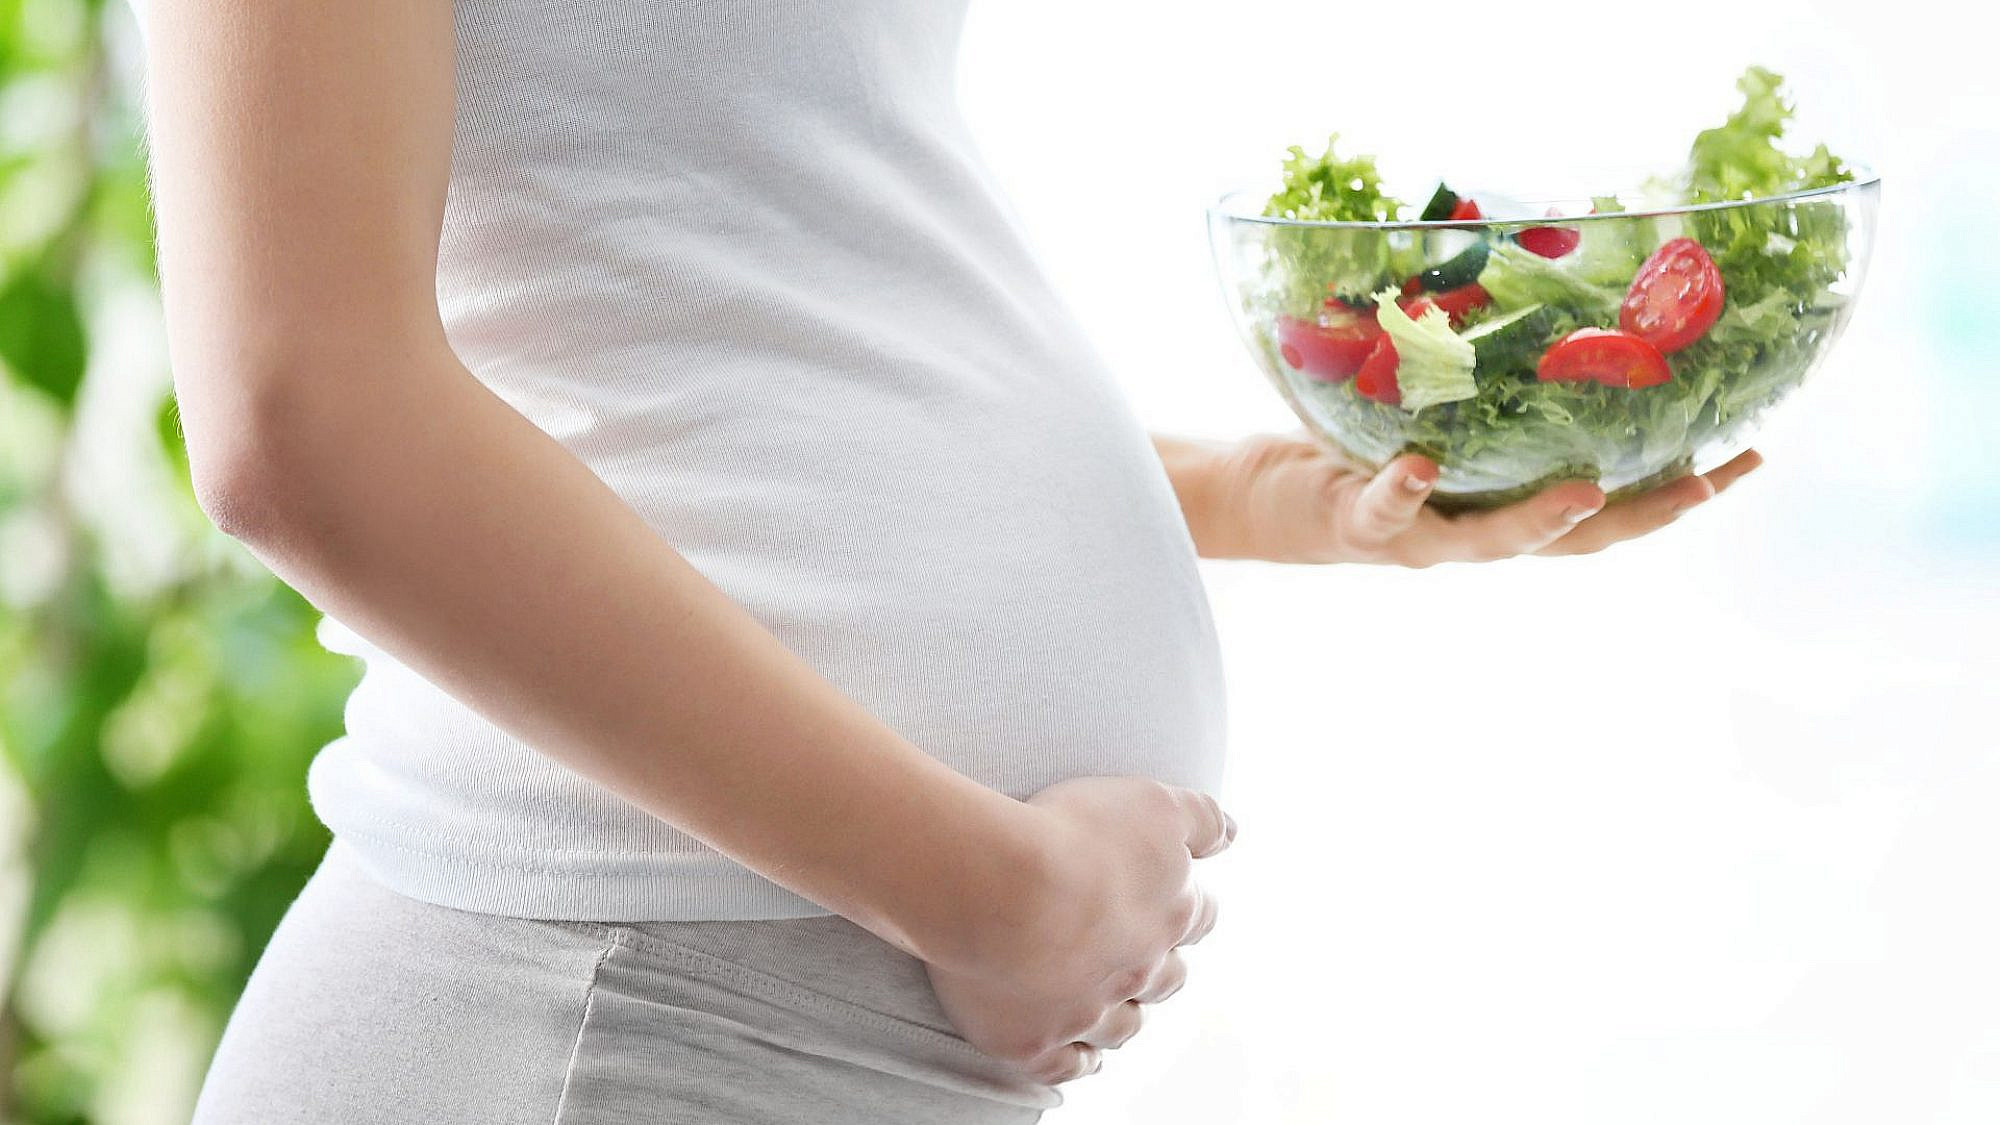 תזונה נכונה בהריון | צילום: shutterstock